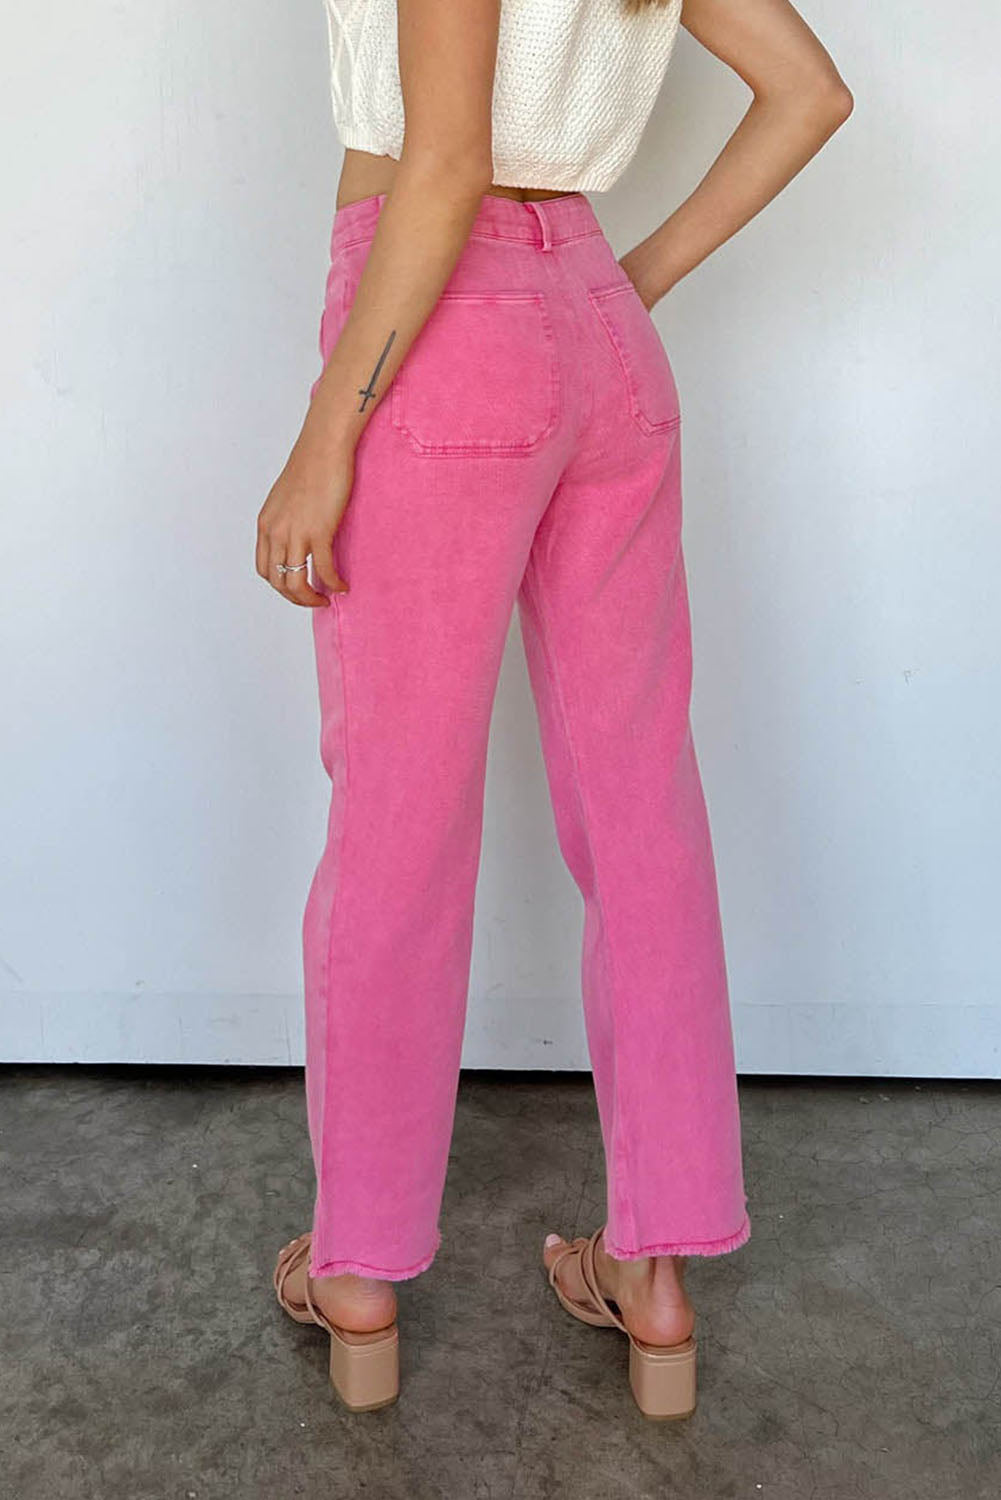 Rosa knöchellange Jeans mit ausgestelltem Bein und ungesäumtem Saum